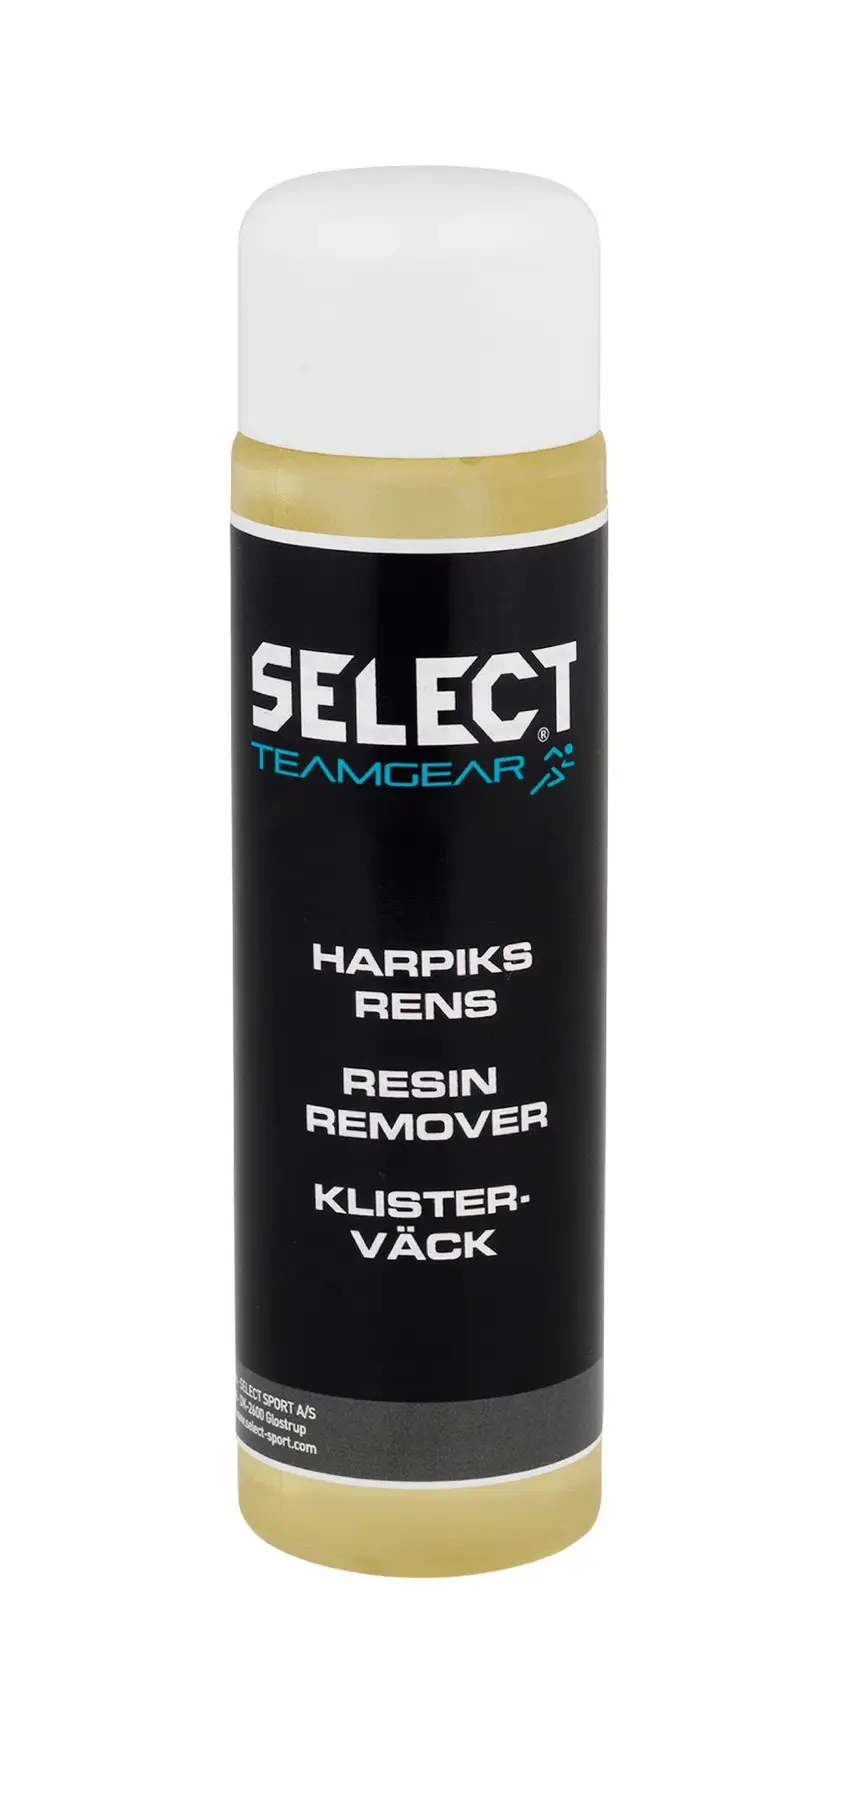 Жидкость для удаления мастики SELECT Resin Remover - liquid (000), 100 ml